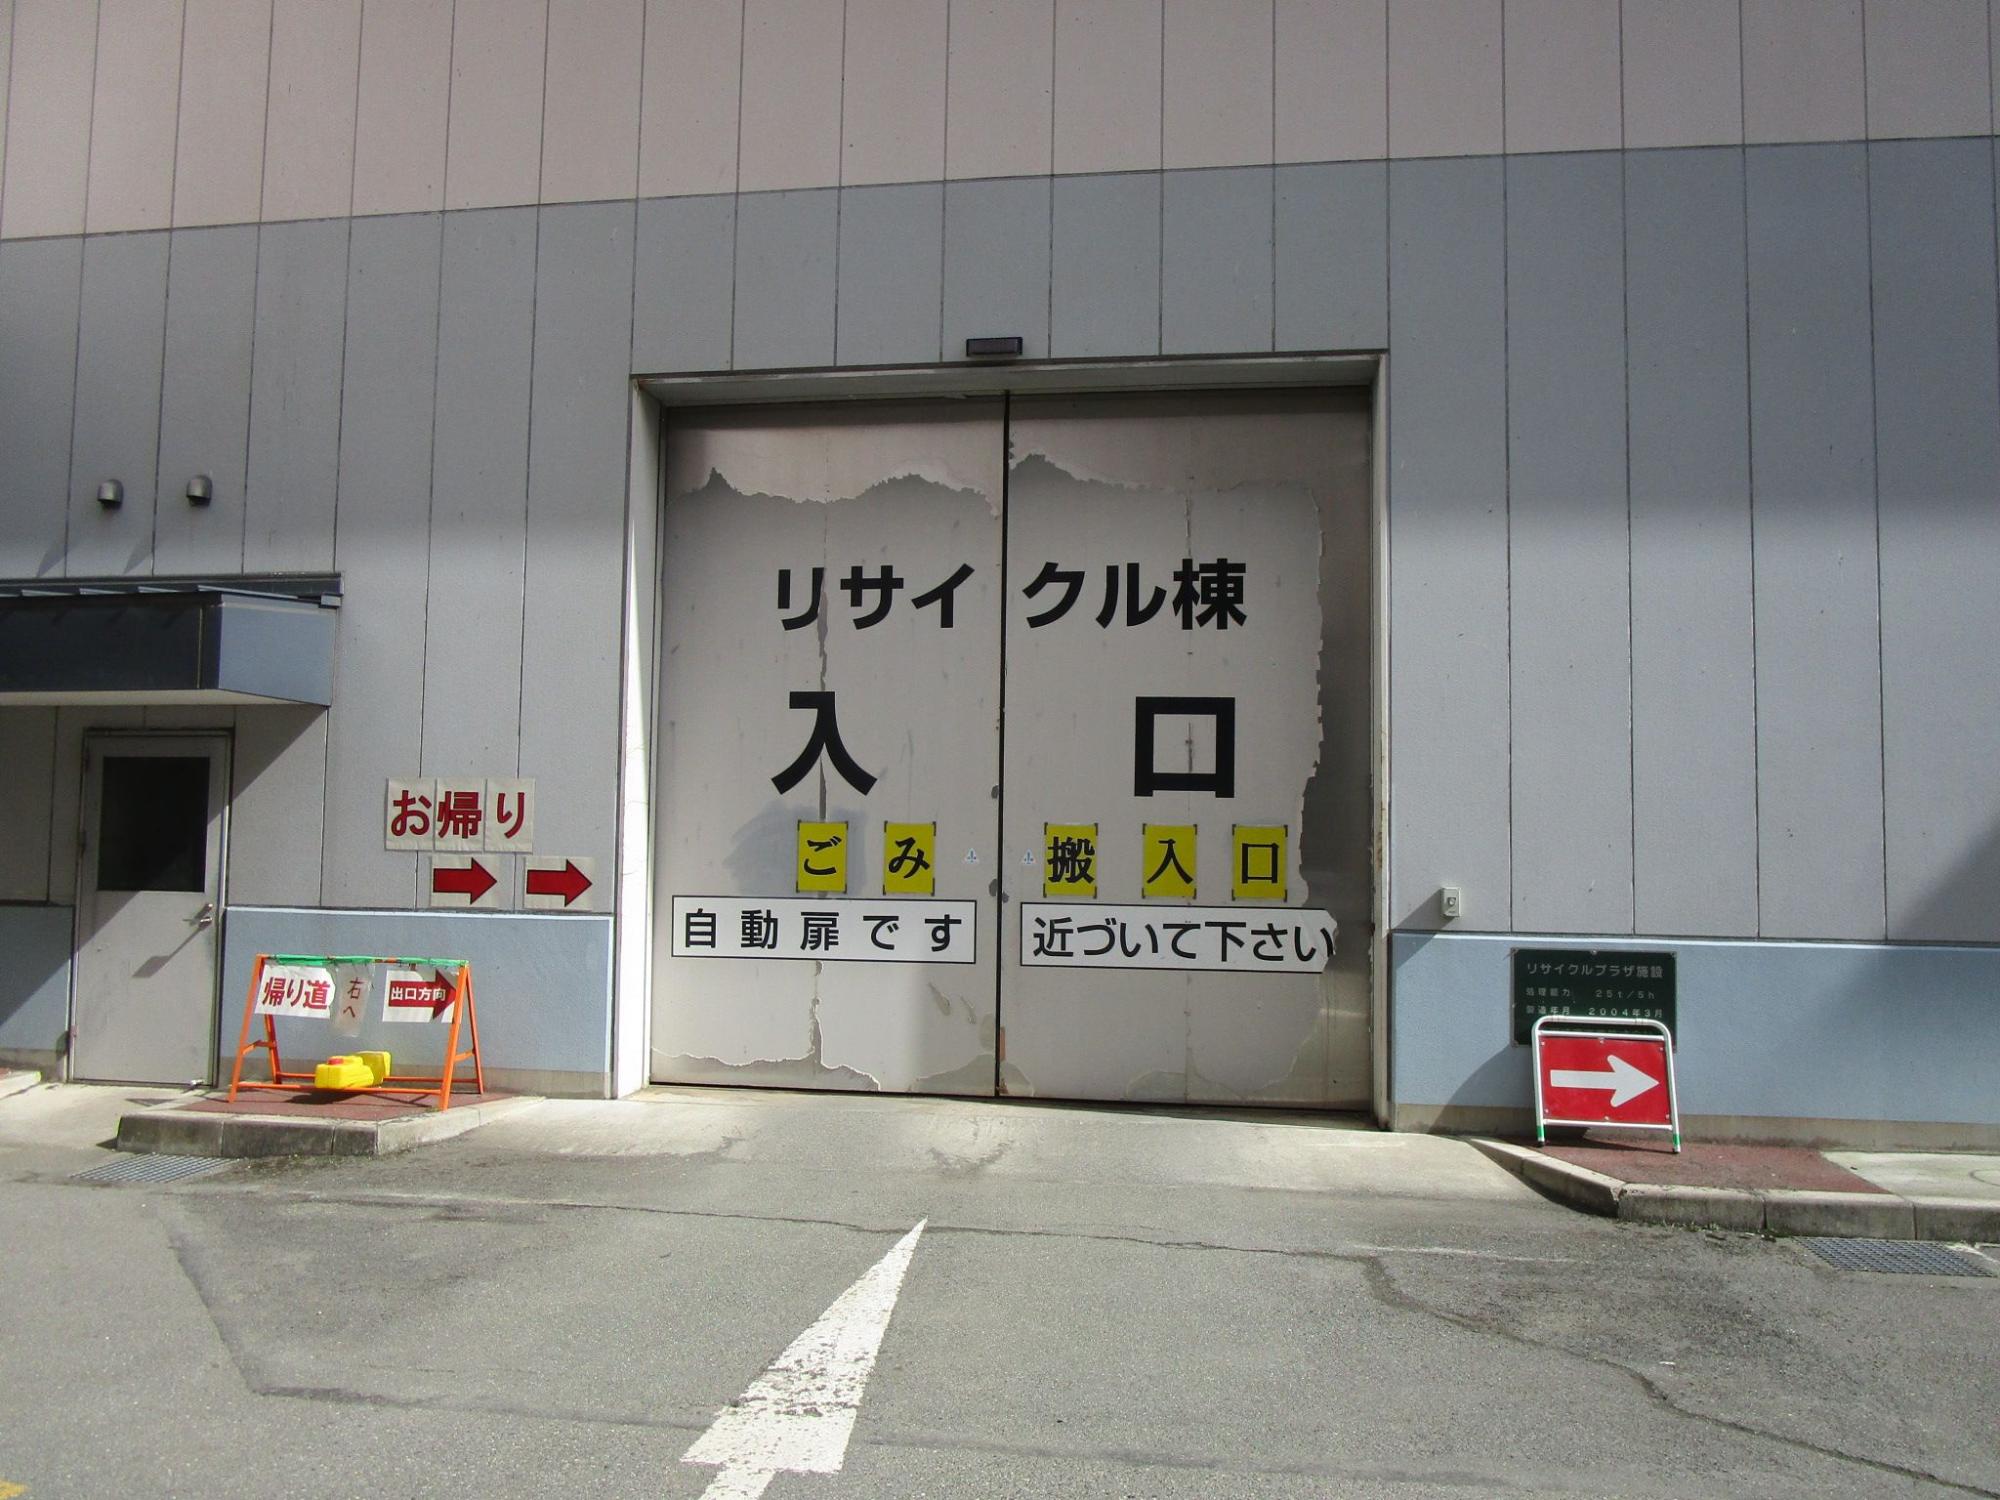 リサイクル棟入口と書かれた大きな鉄製の自動扉の写真